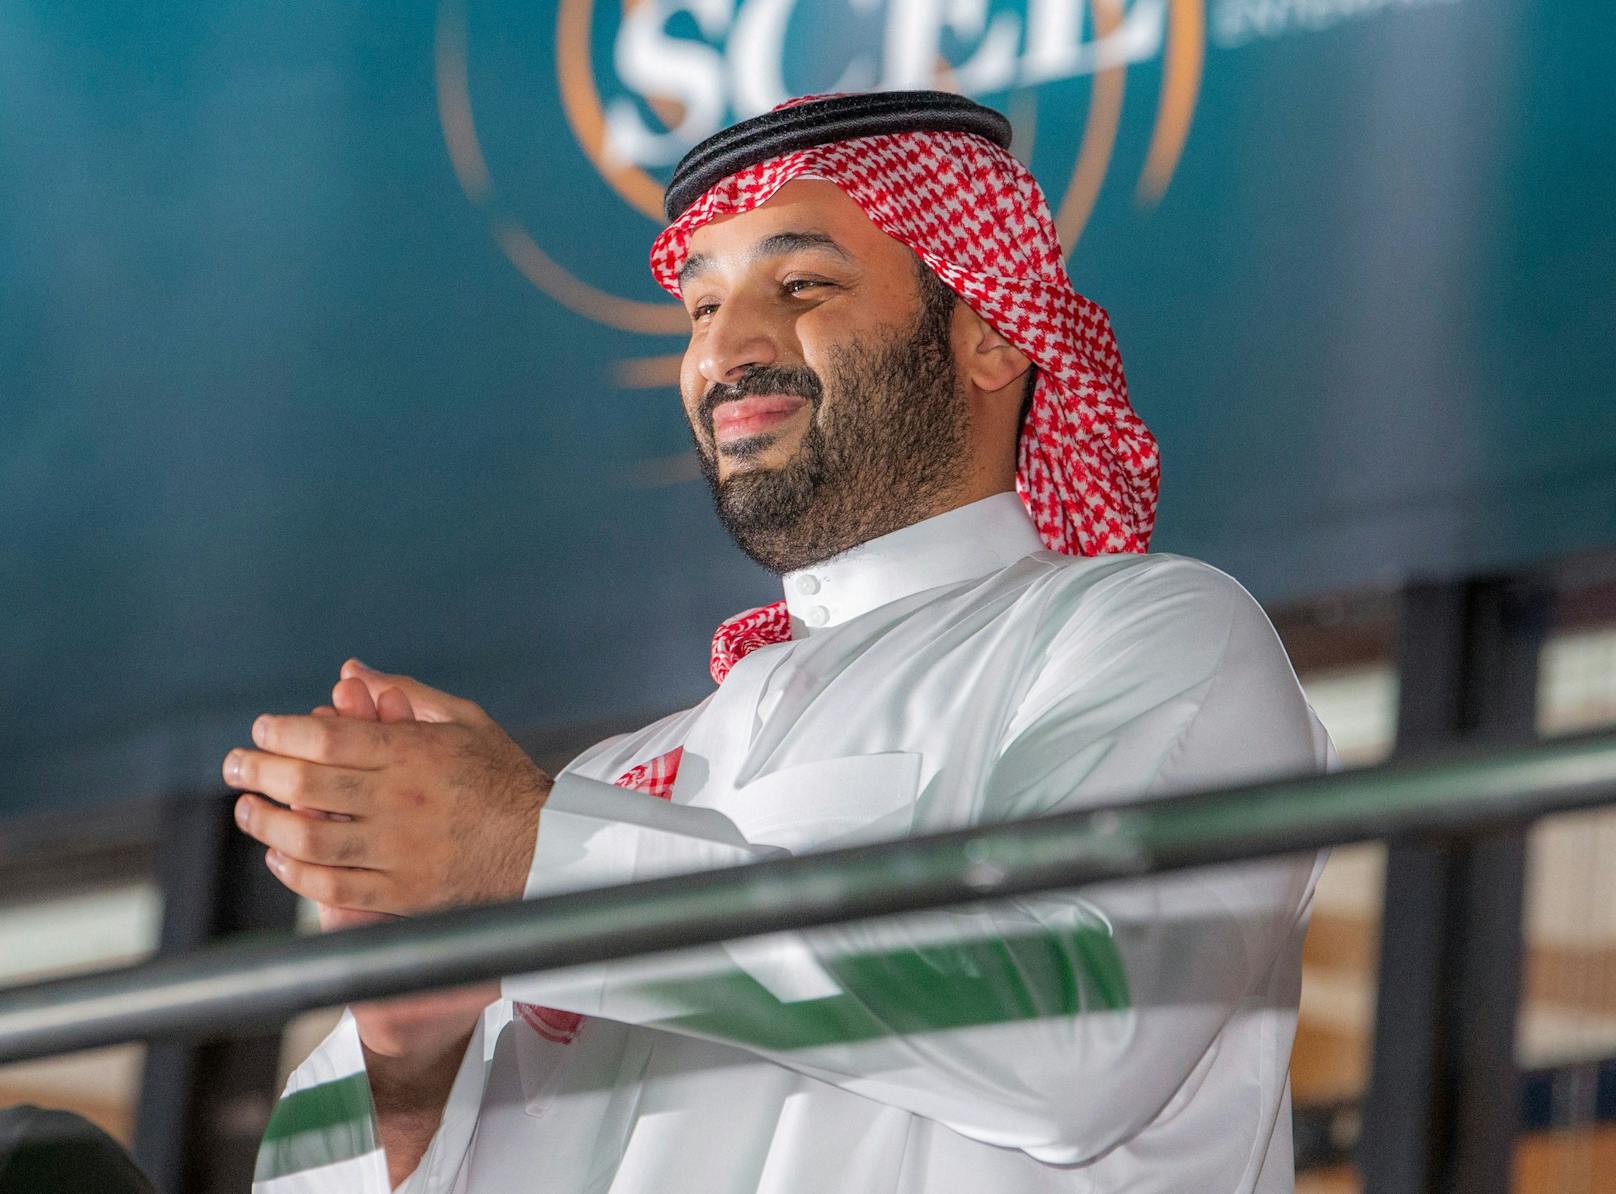 Saudi-Kronprinz Mohammed bin Salman will nach der Formel 1 nun auch die Fußball-WM nach Saudi-Arabien holen.